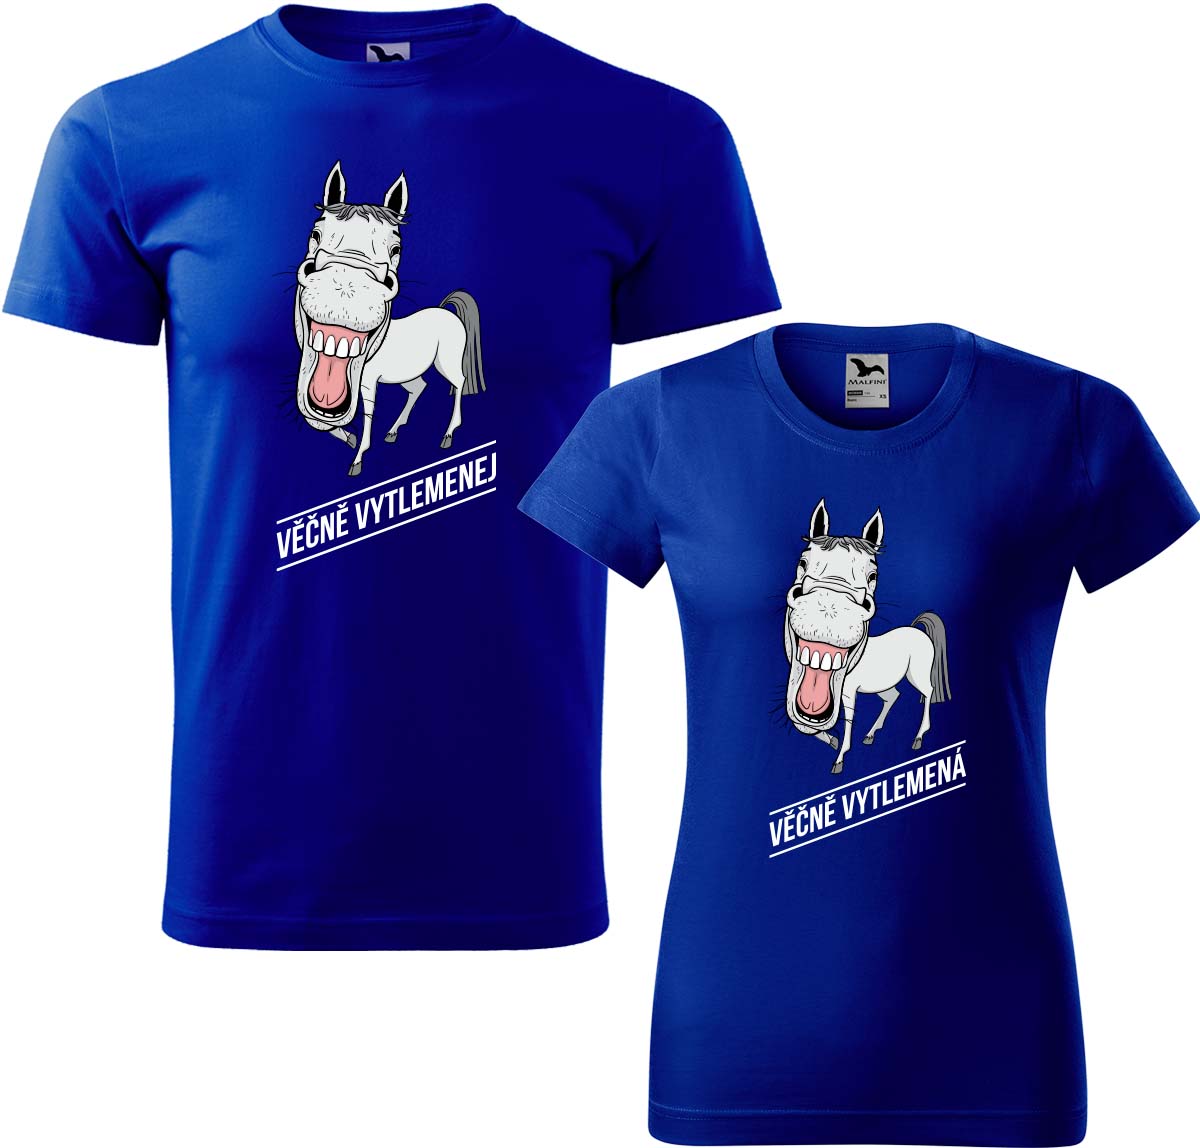 Trička pro páry - Věčně vytlemenej a věčně vytlemená Barva: Královská modrá (05), Velikost dámské tričko: L, Velikost pánské tričko: L